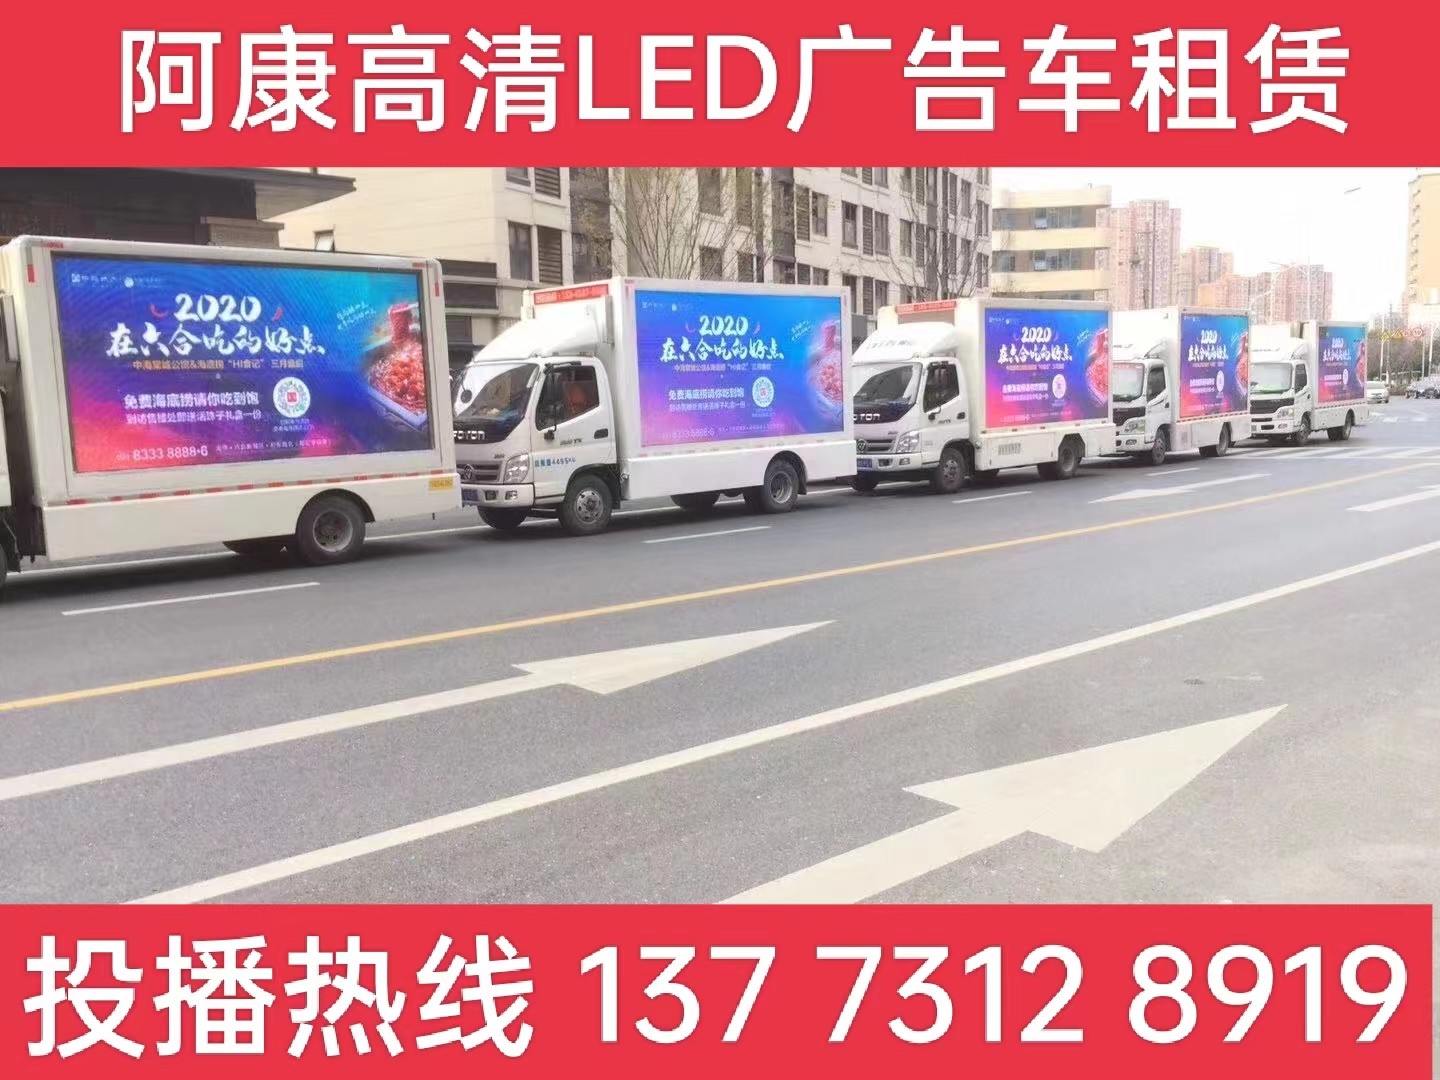 姜堰区宣传车出租-海底捞LED广告